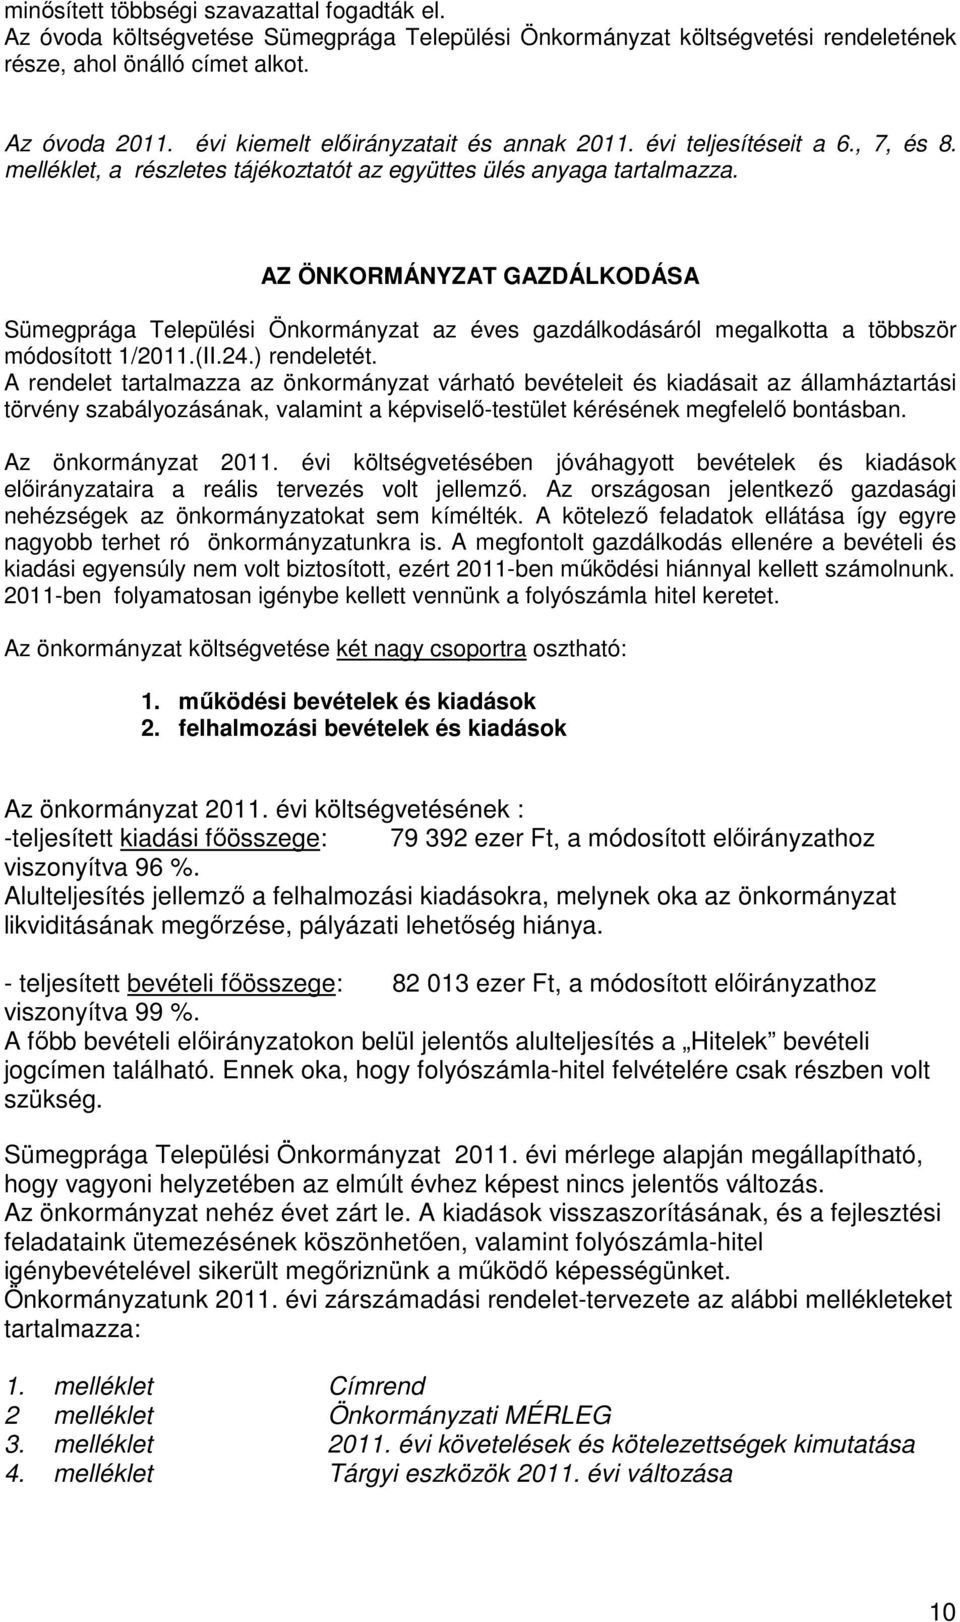 AZ ÖNKORMÁNYZAT GAZDÁLKODÁSA Sümegprága Települési Önkormányzat az éves gazdálkodásáról megalkotta a többször módosított 1/2011.(II.24.) rendeletét.